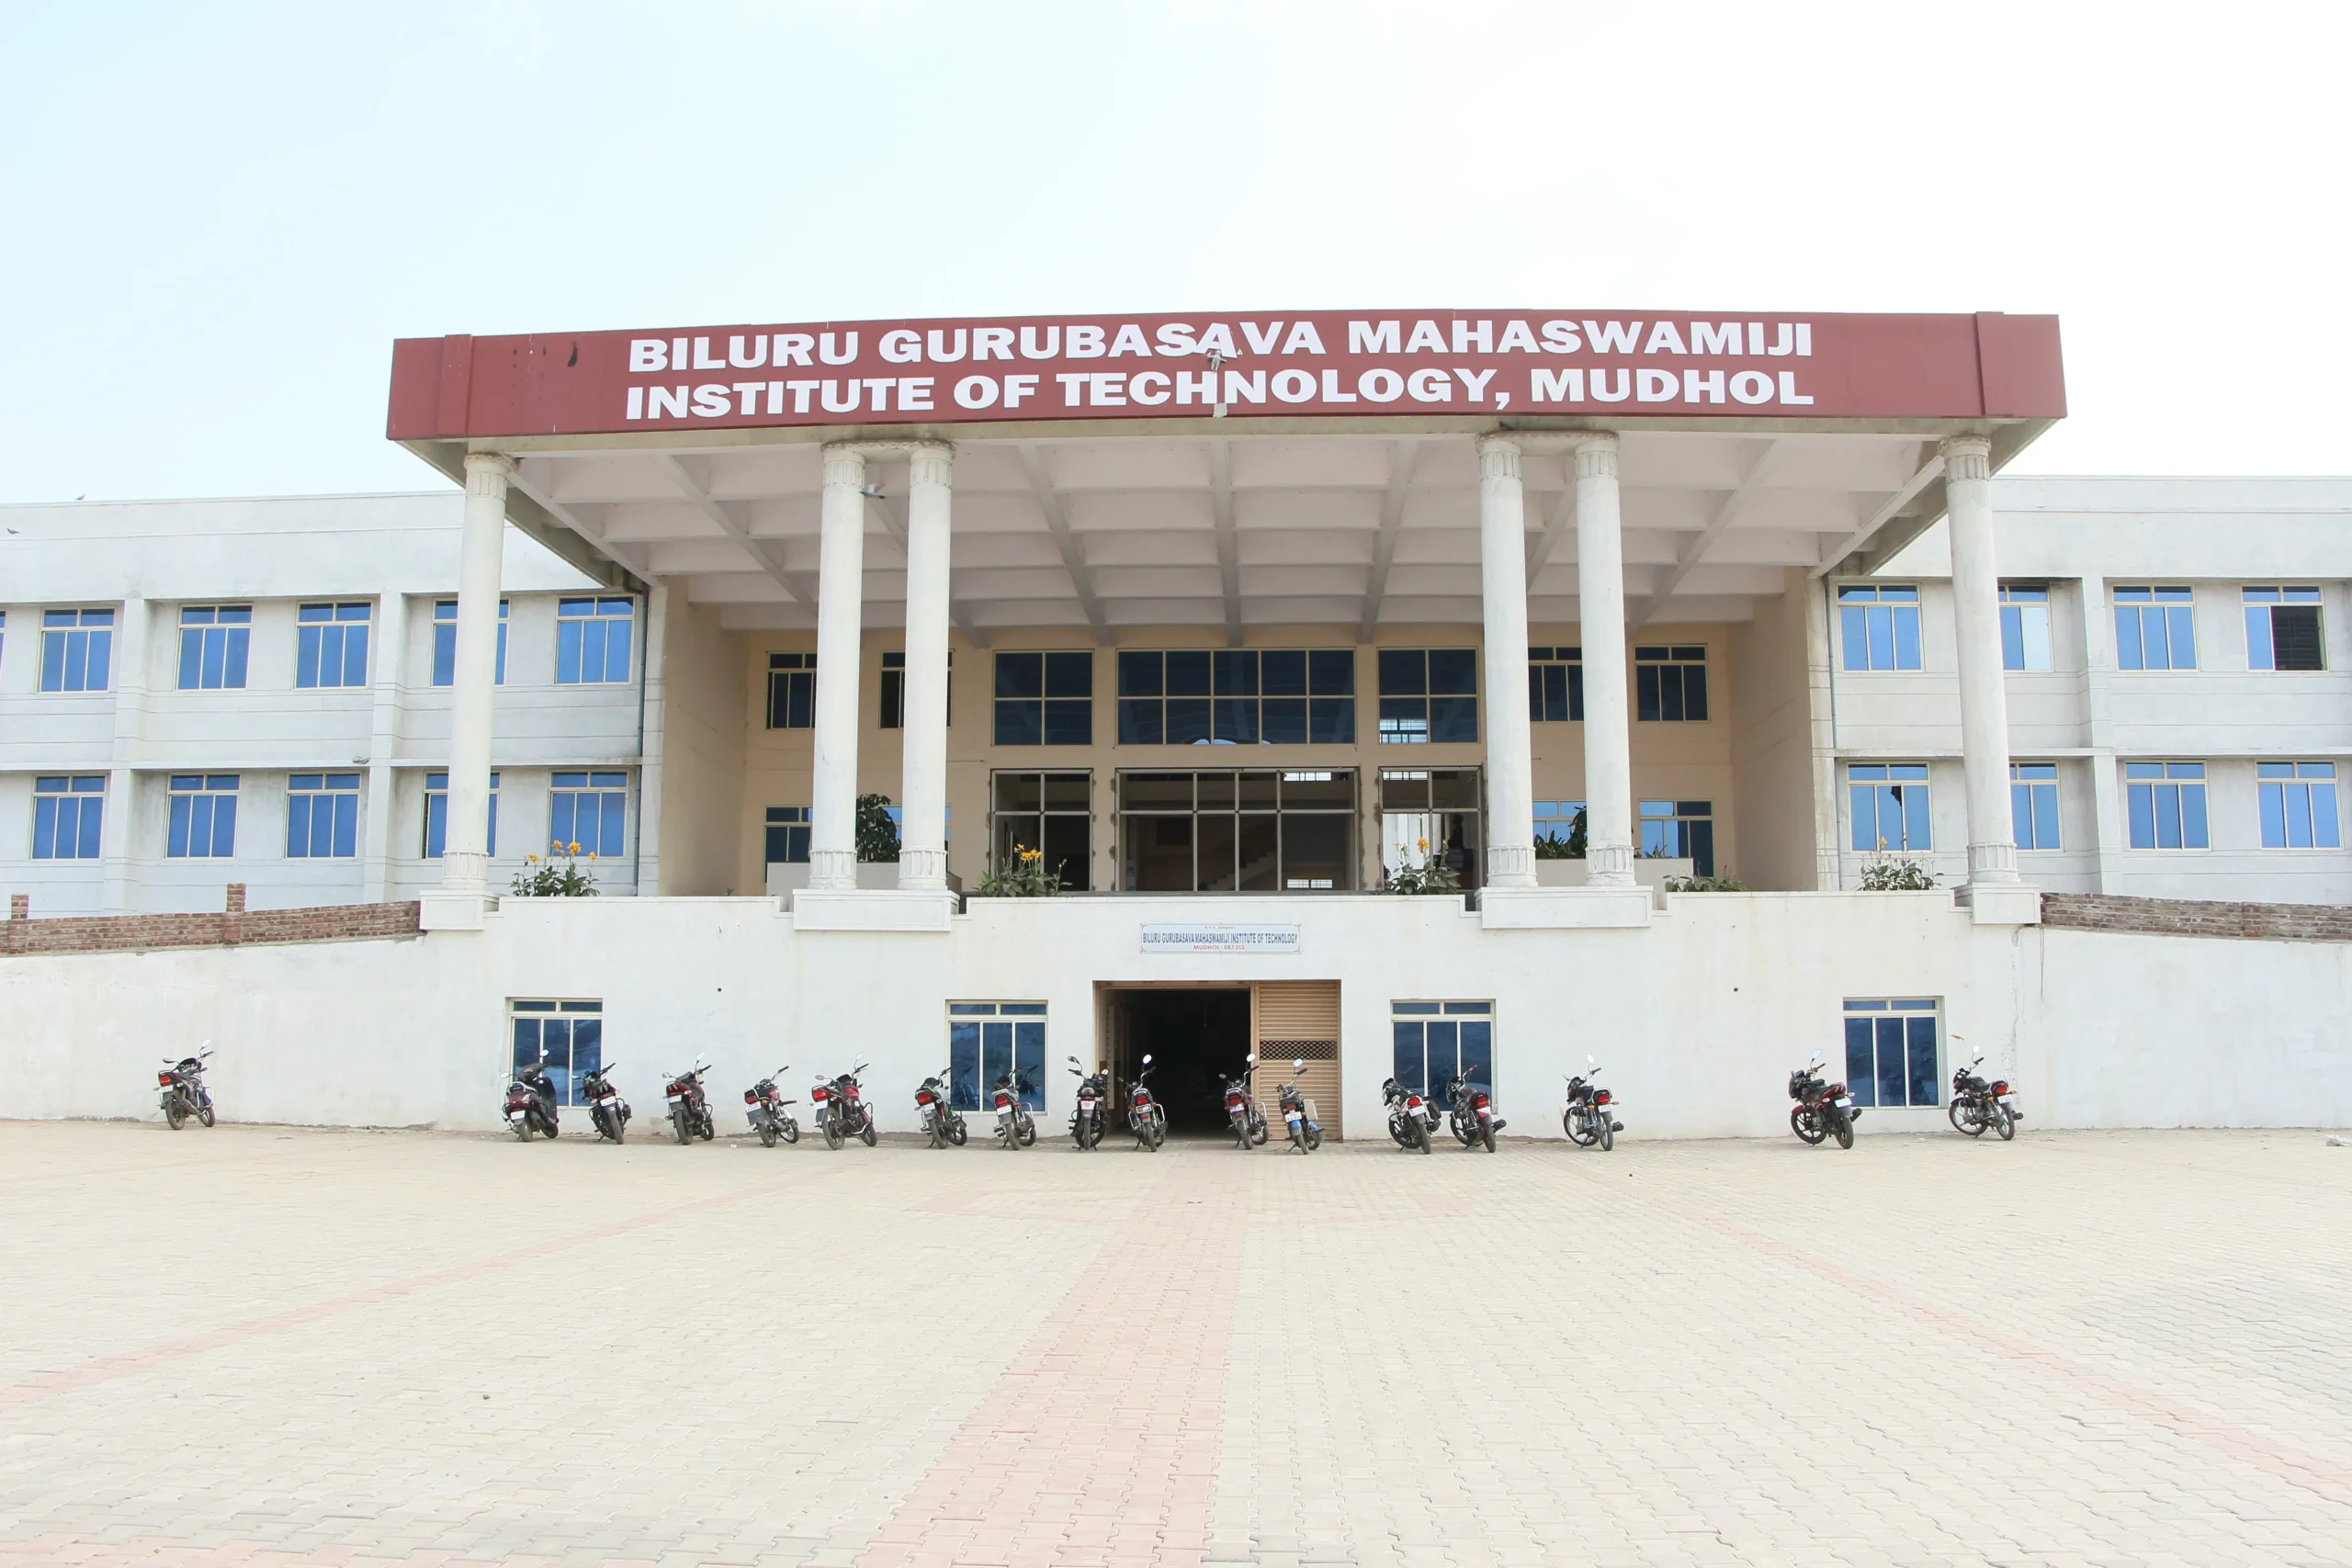 Biluru Gurubasava Mahaswamiji Institute of Technology Mudhol